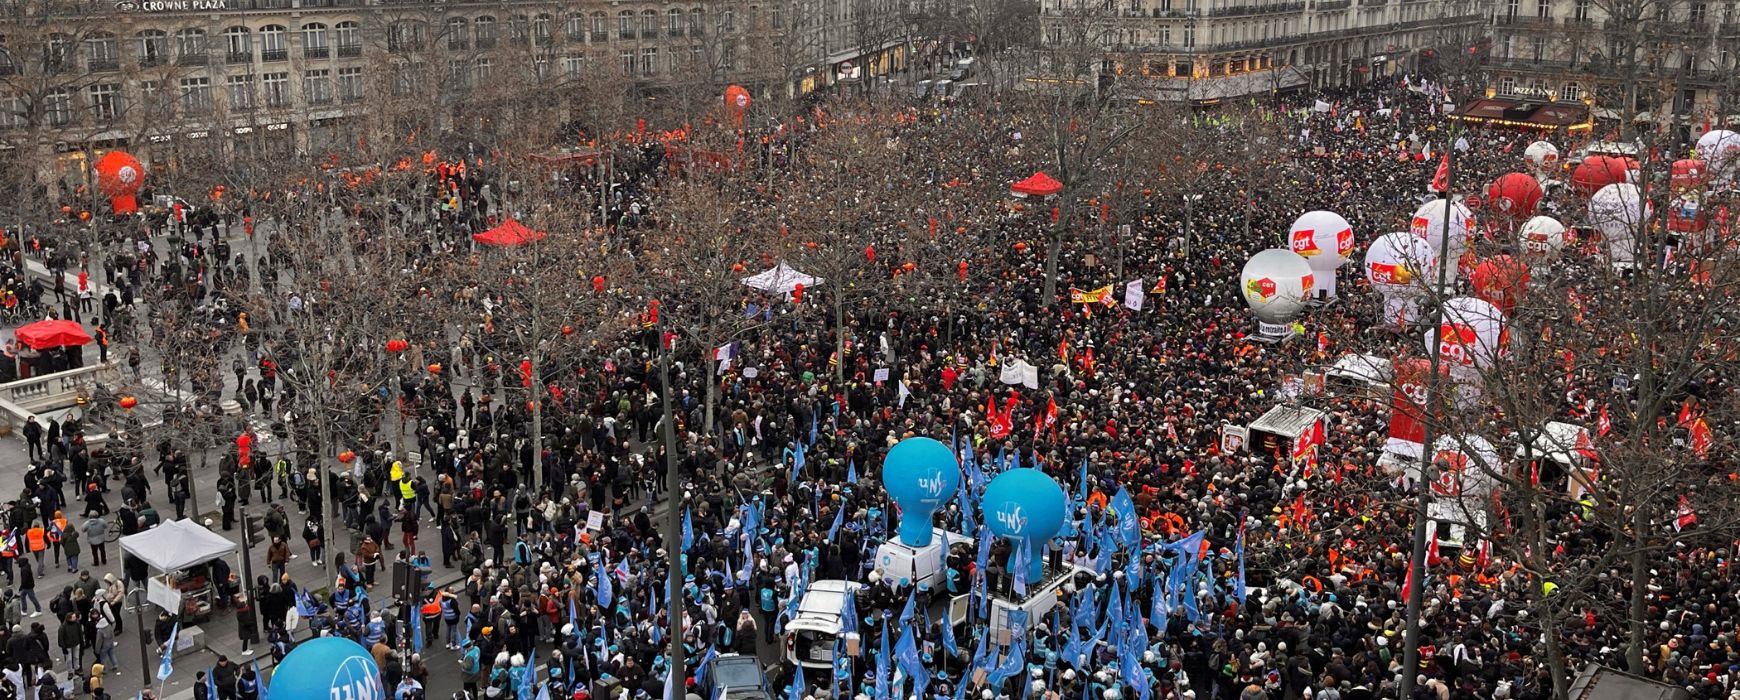 Γαλλία: Έρχεται μεγάλη απεργιακή κινητοποίηση – Τα συνδικάτα προβλέπουν πως θα μείνει «αξέχαστη» στον Μακρόν (Photos/Videos)